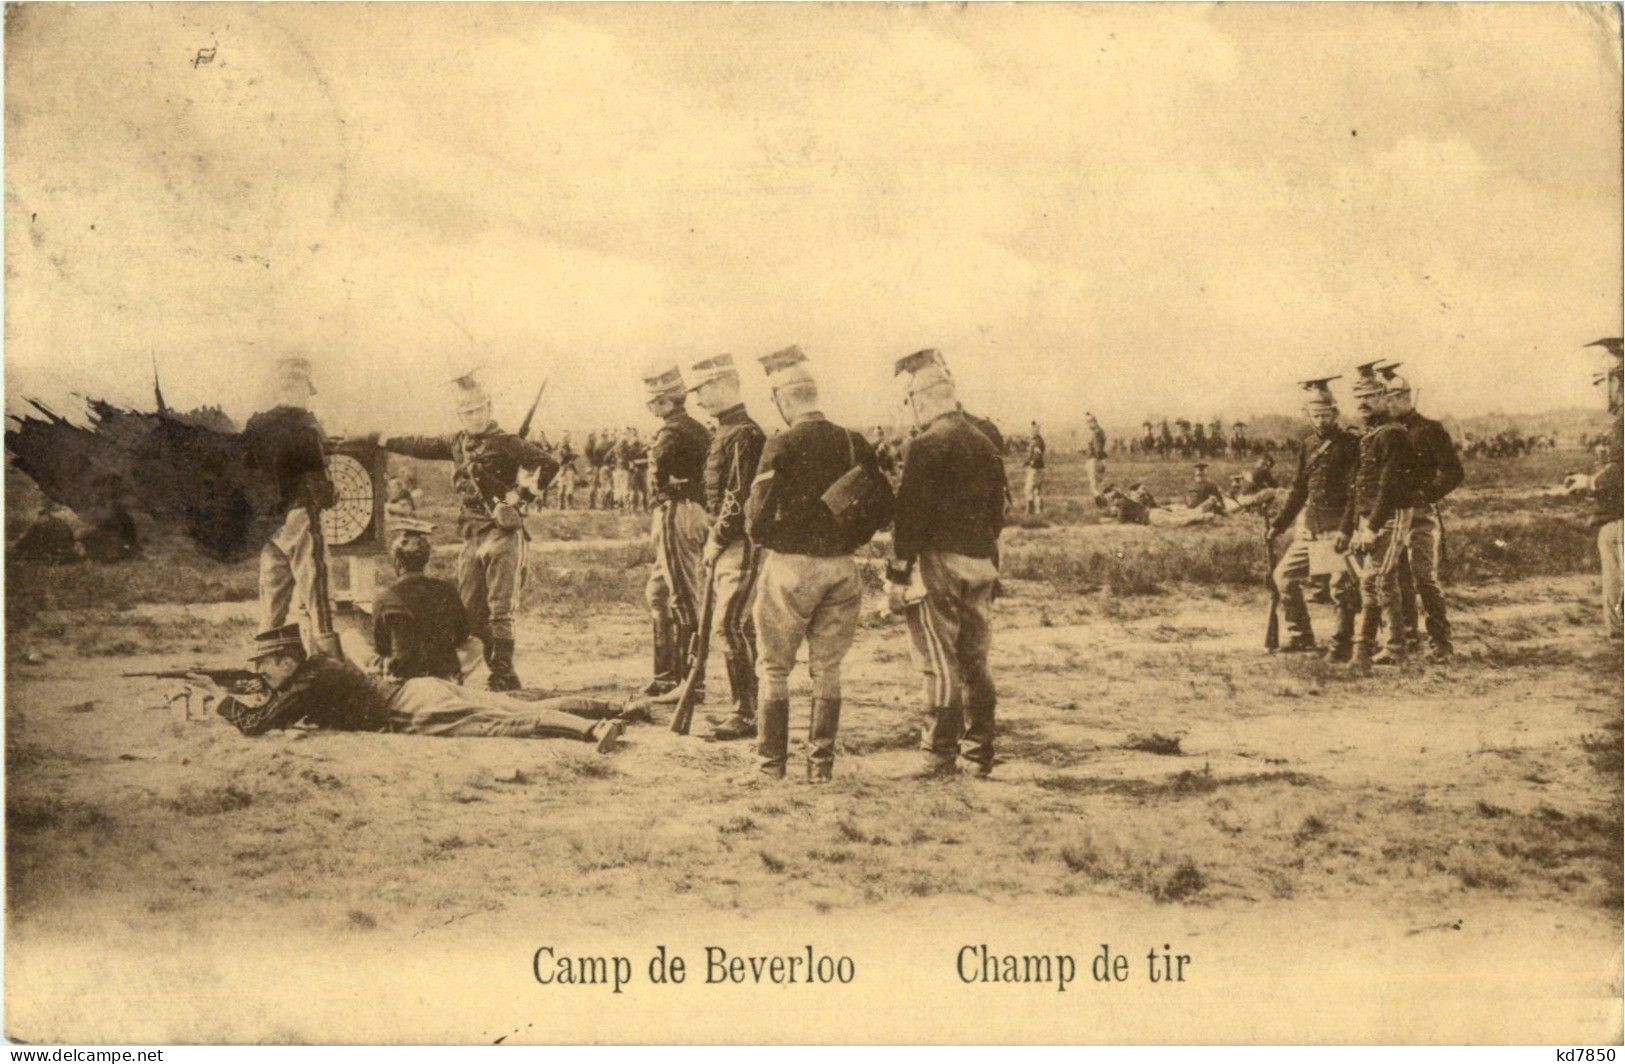 Camp De Berverloo - Champ De Tir - Leopoldsburg (Beverloo Camp)